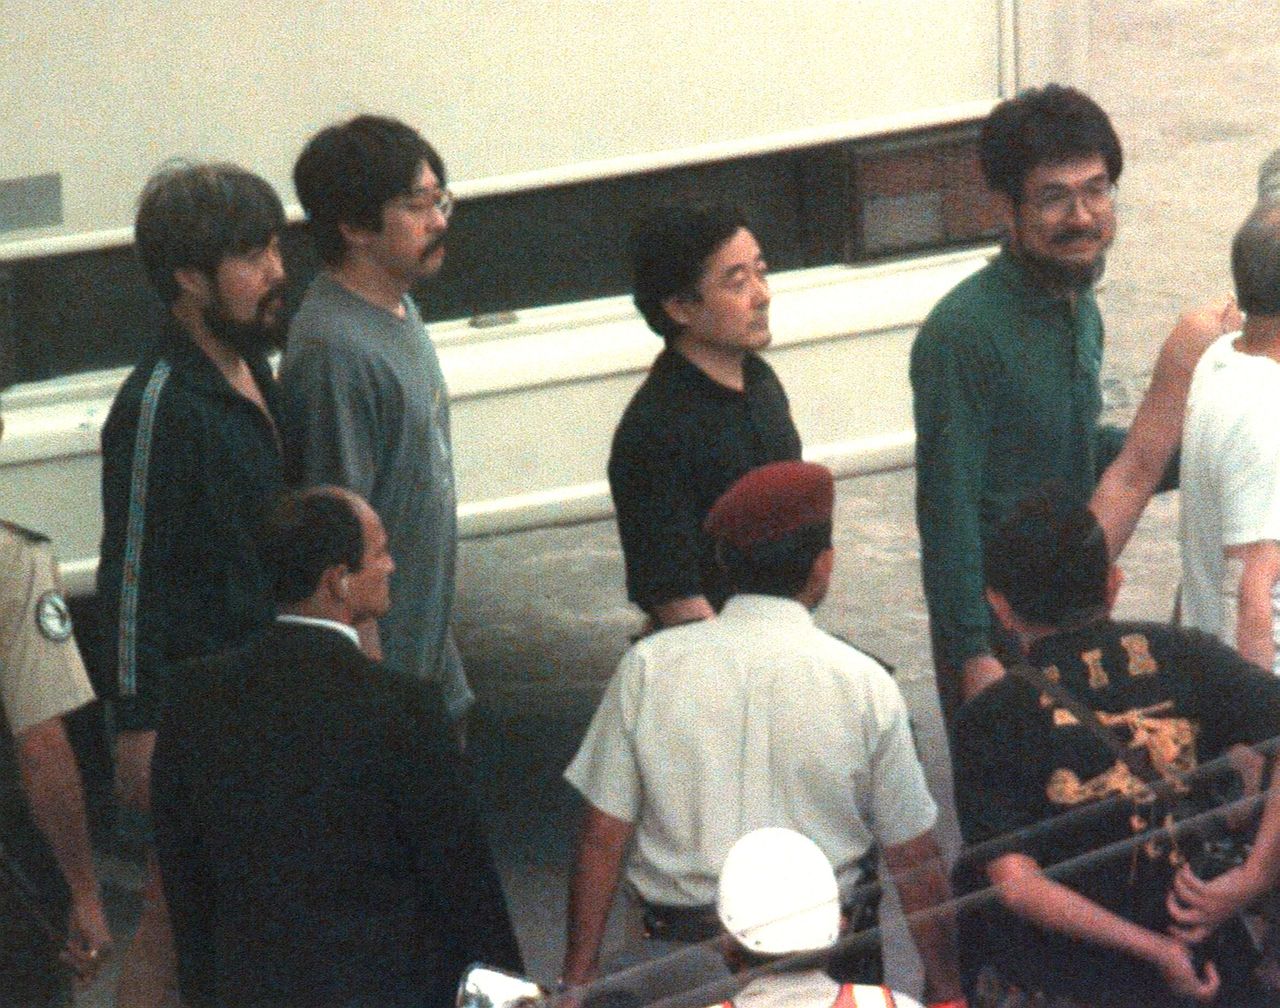 Des otages japonais soulagés après leur libération ; au centre, en chemise noire, Ogura Hidetaka, le 22 avril 1997 à Lima au Pérou (Jiji)